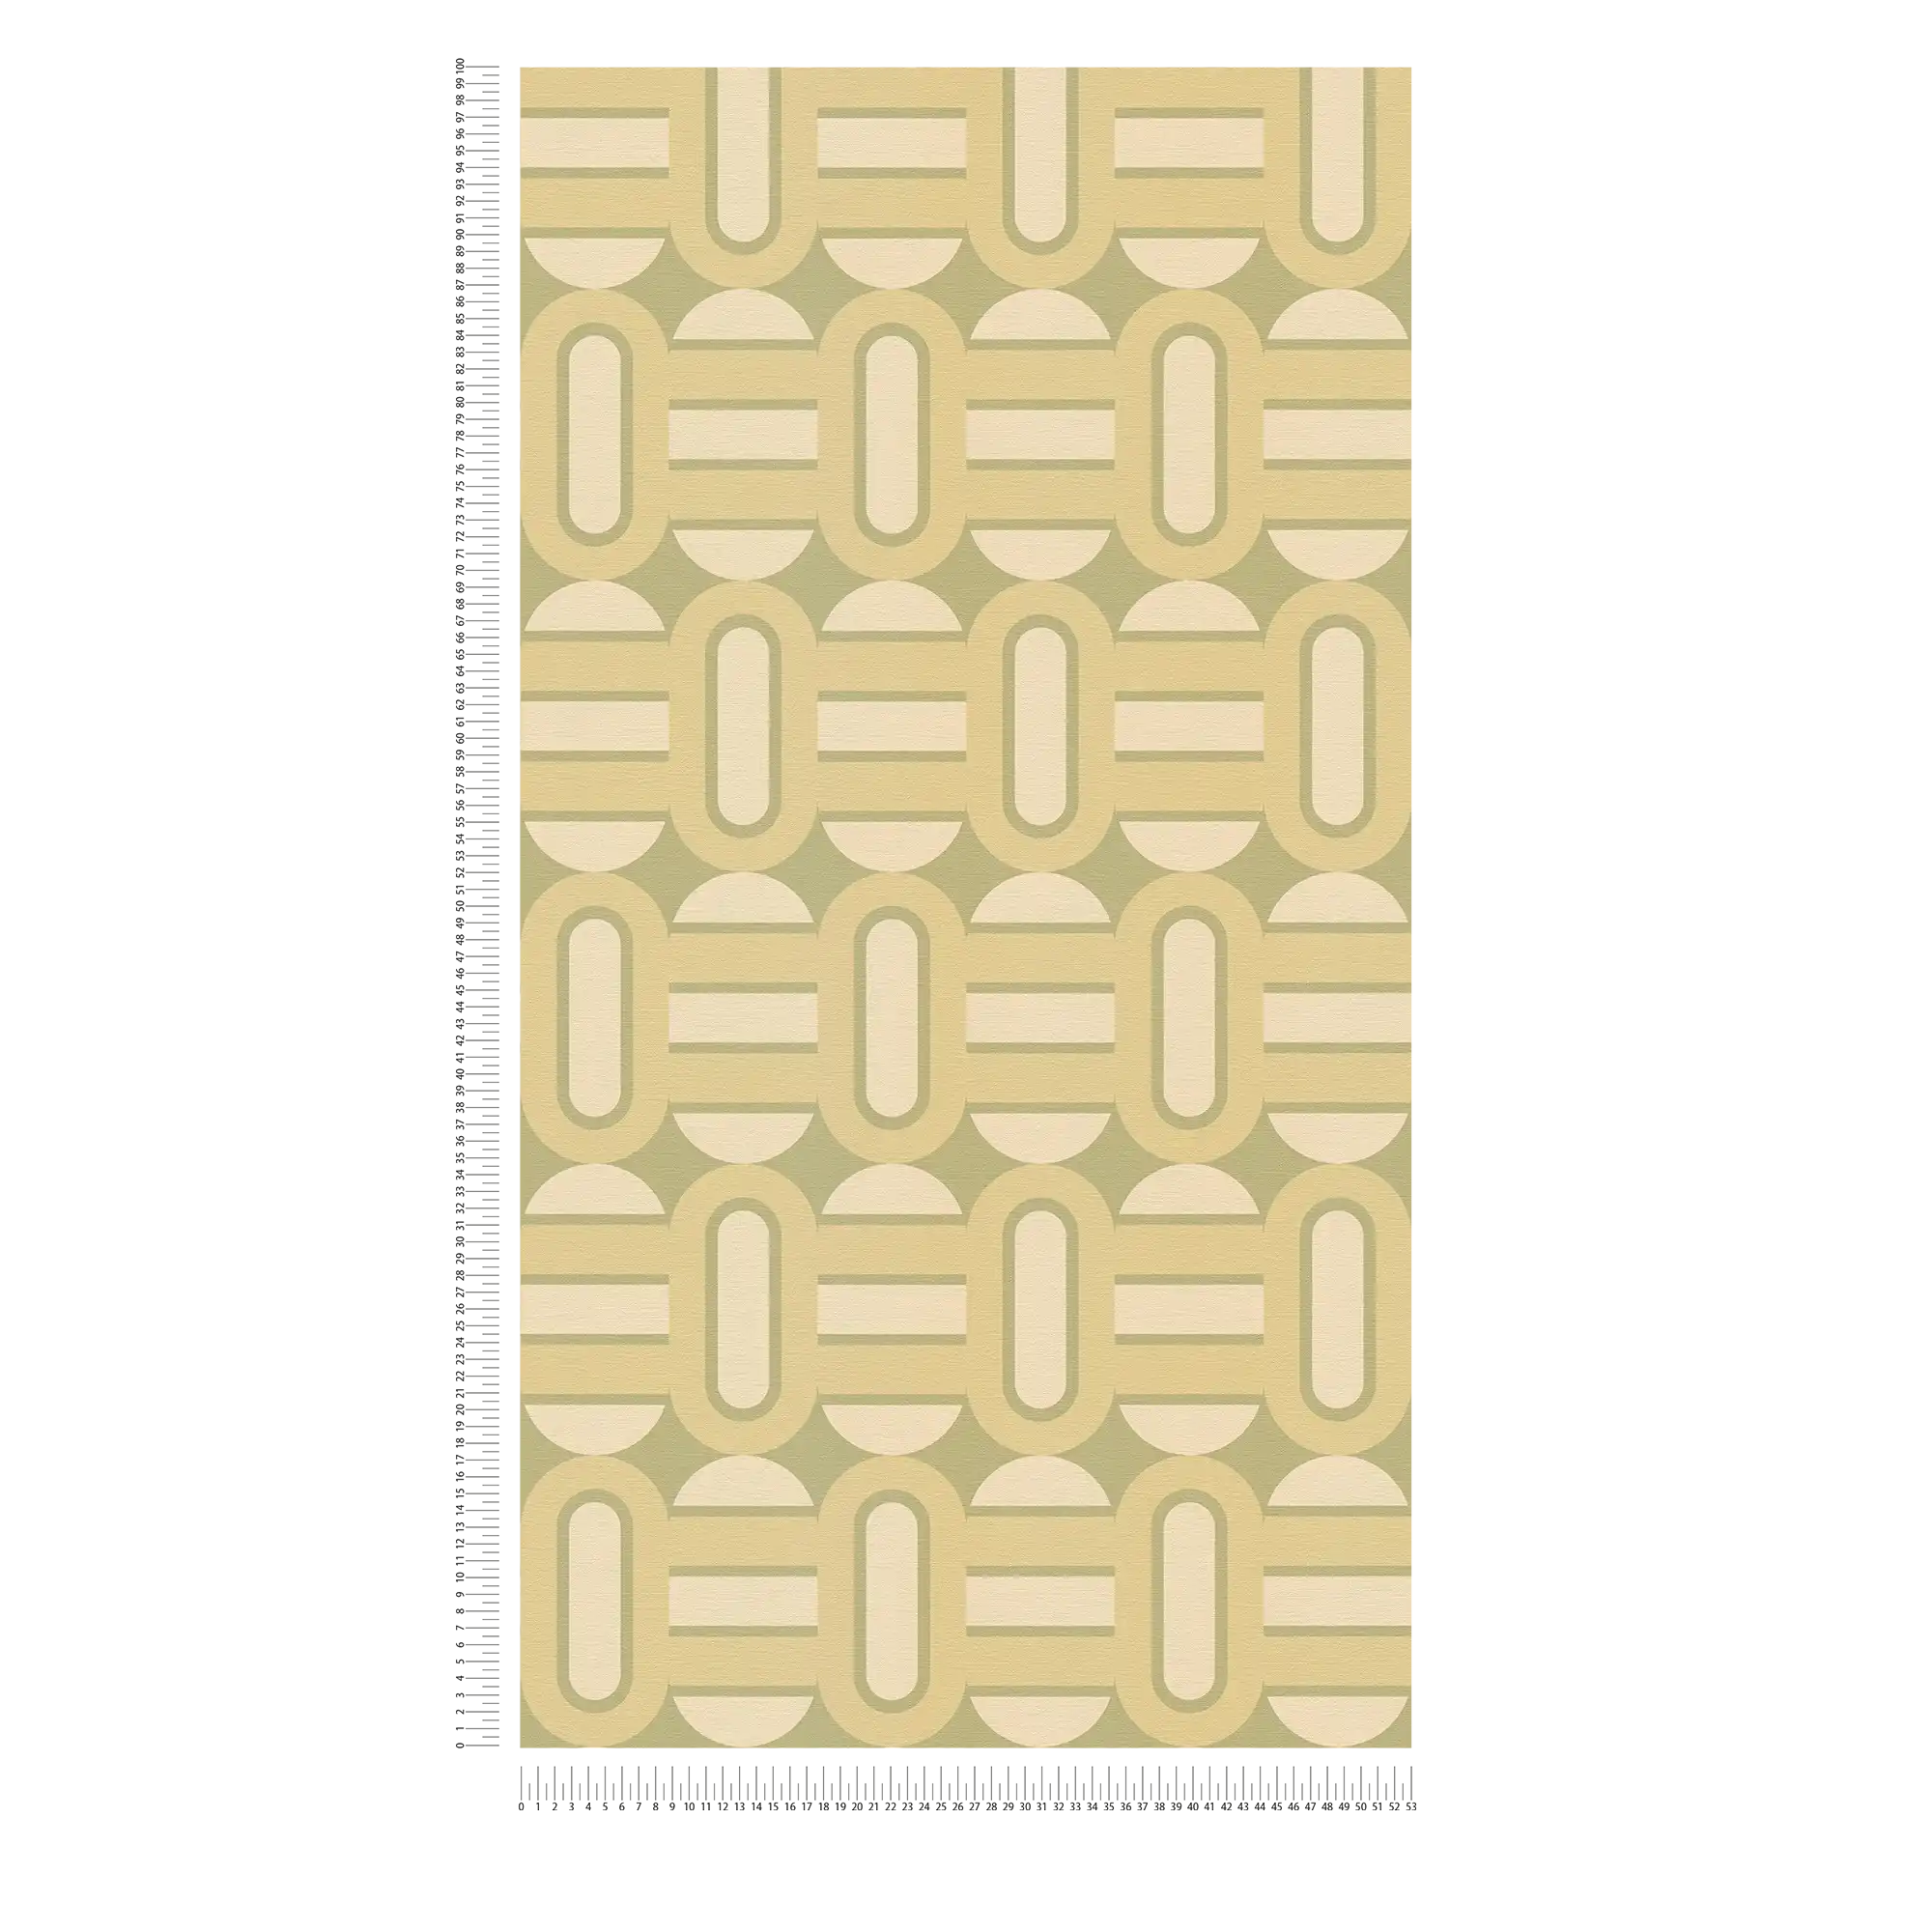             Vliesbehang in retrostijl met patroon van ovalen en balken - groen, crème
        